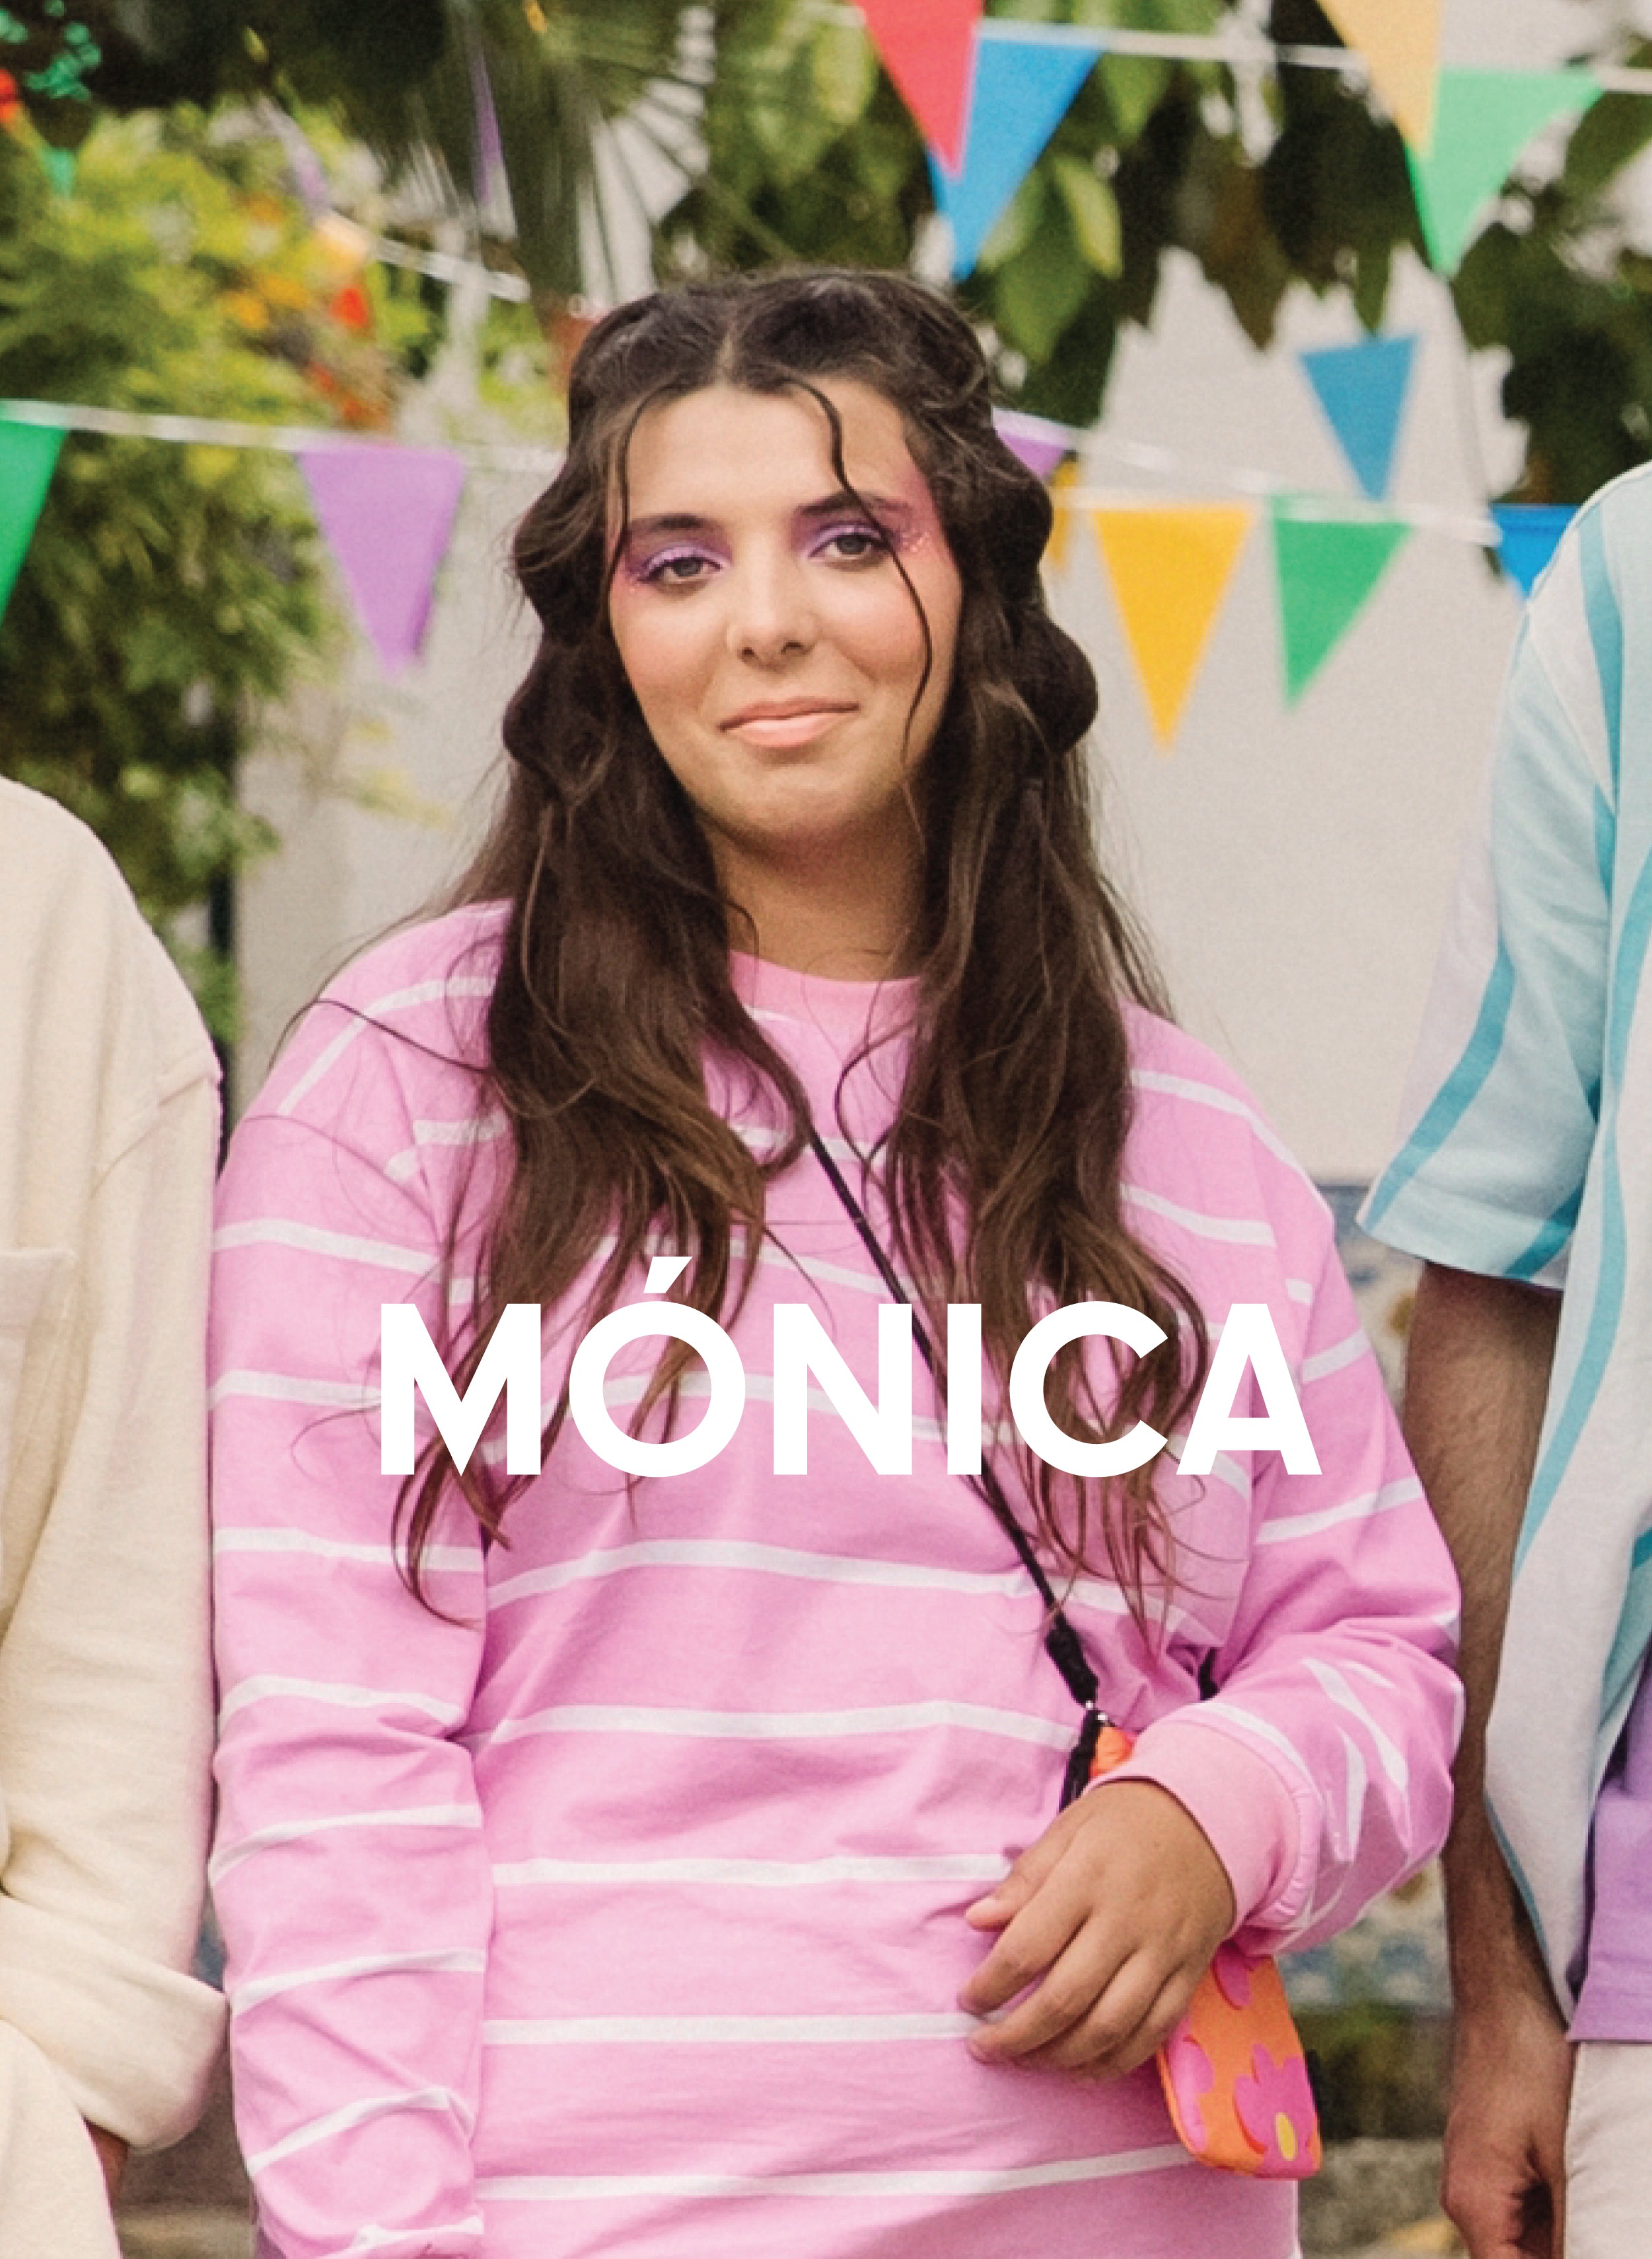 Mónica vestito di rosa, indossando Diverge sneakers, promuovendo l'impatto sociale e le scarpe personalizzate attraverso il progetto Imagine.